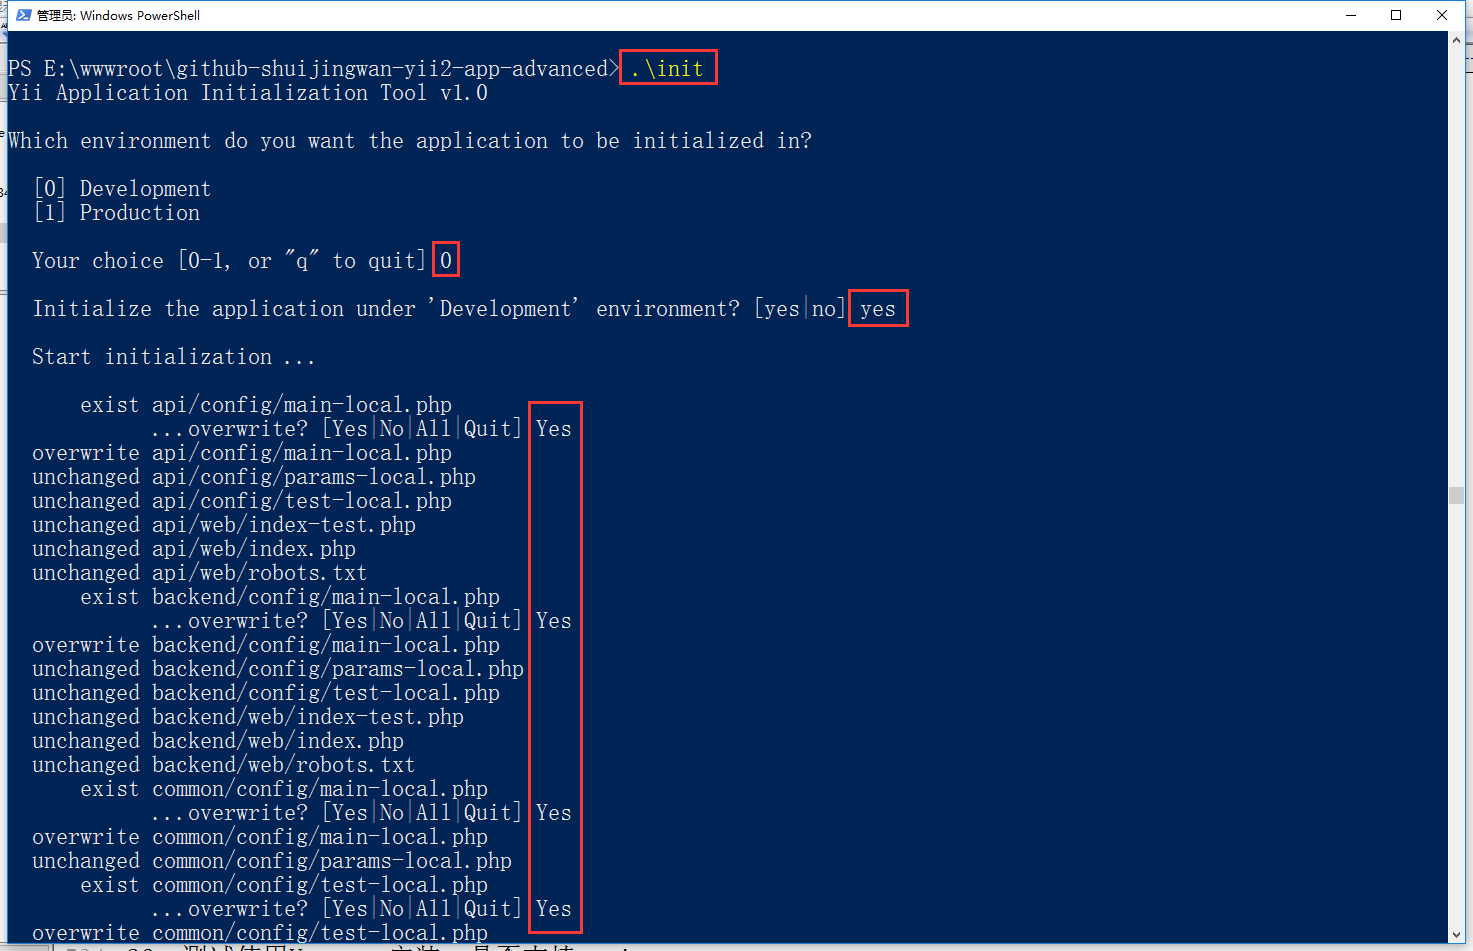 打开 Windows PowerShell，执行 init 命令并选择 dev 作为环境，api应用所需环境配置文件自动生成